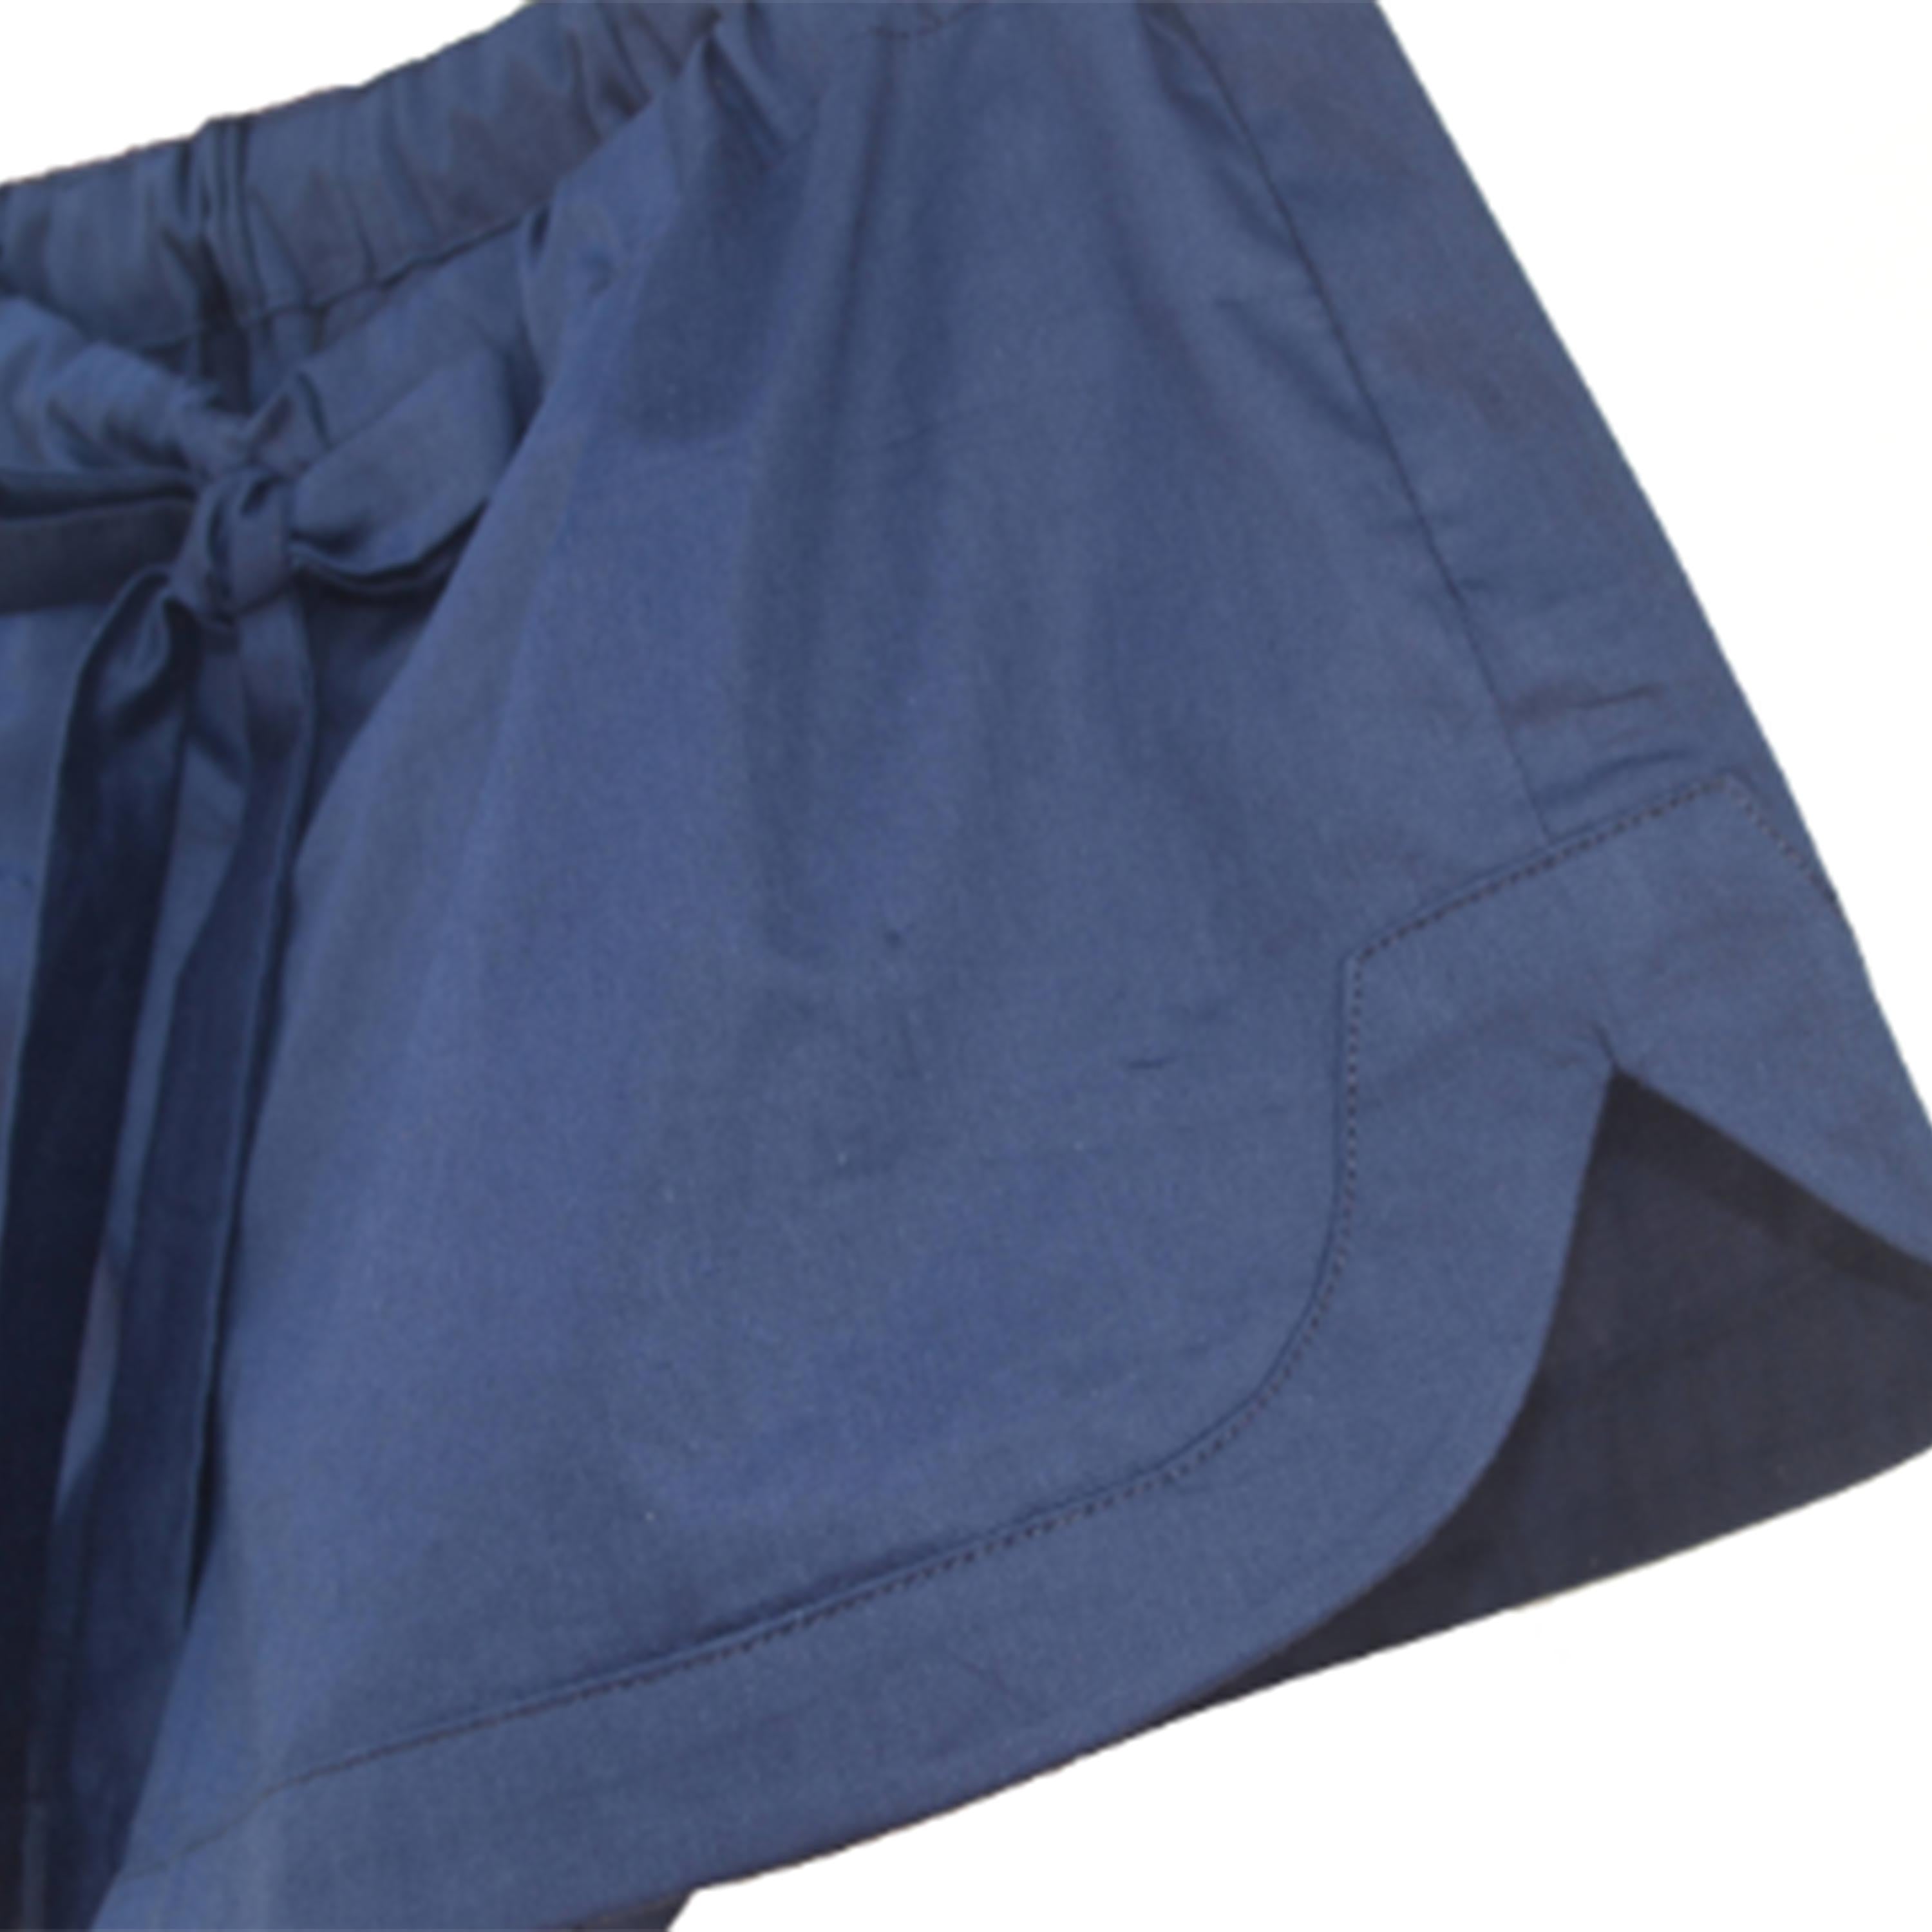 Navy Blue Cotton Shorts, Waist Tie Shorts